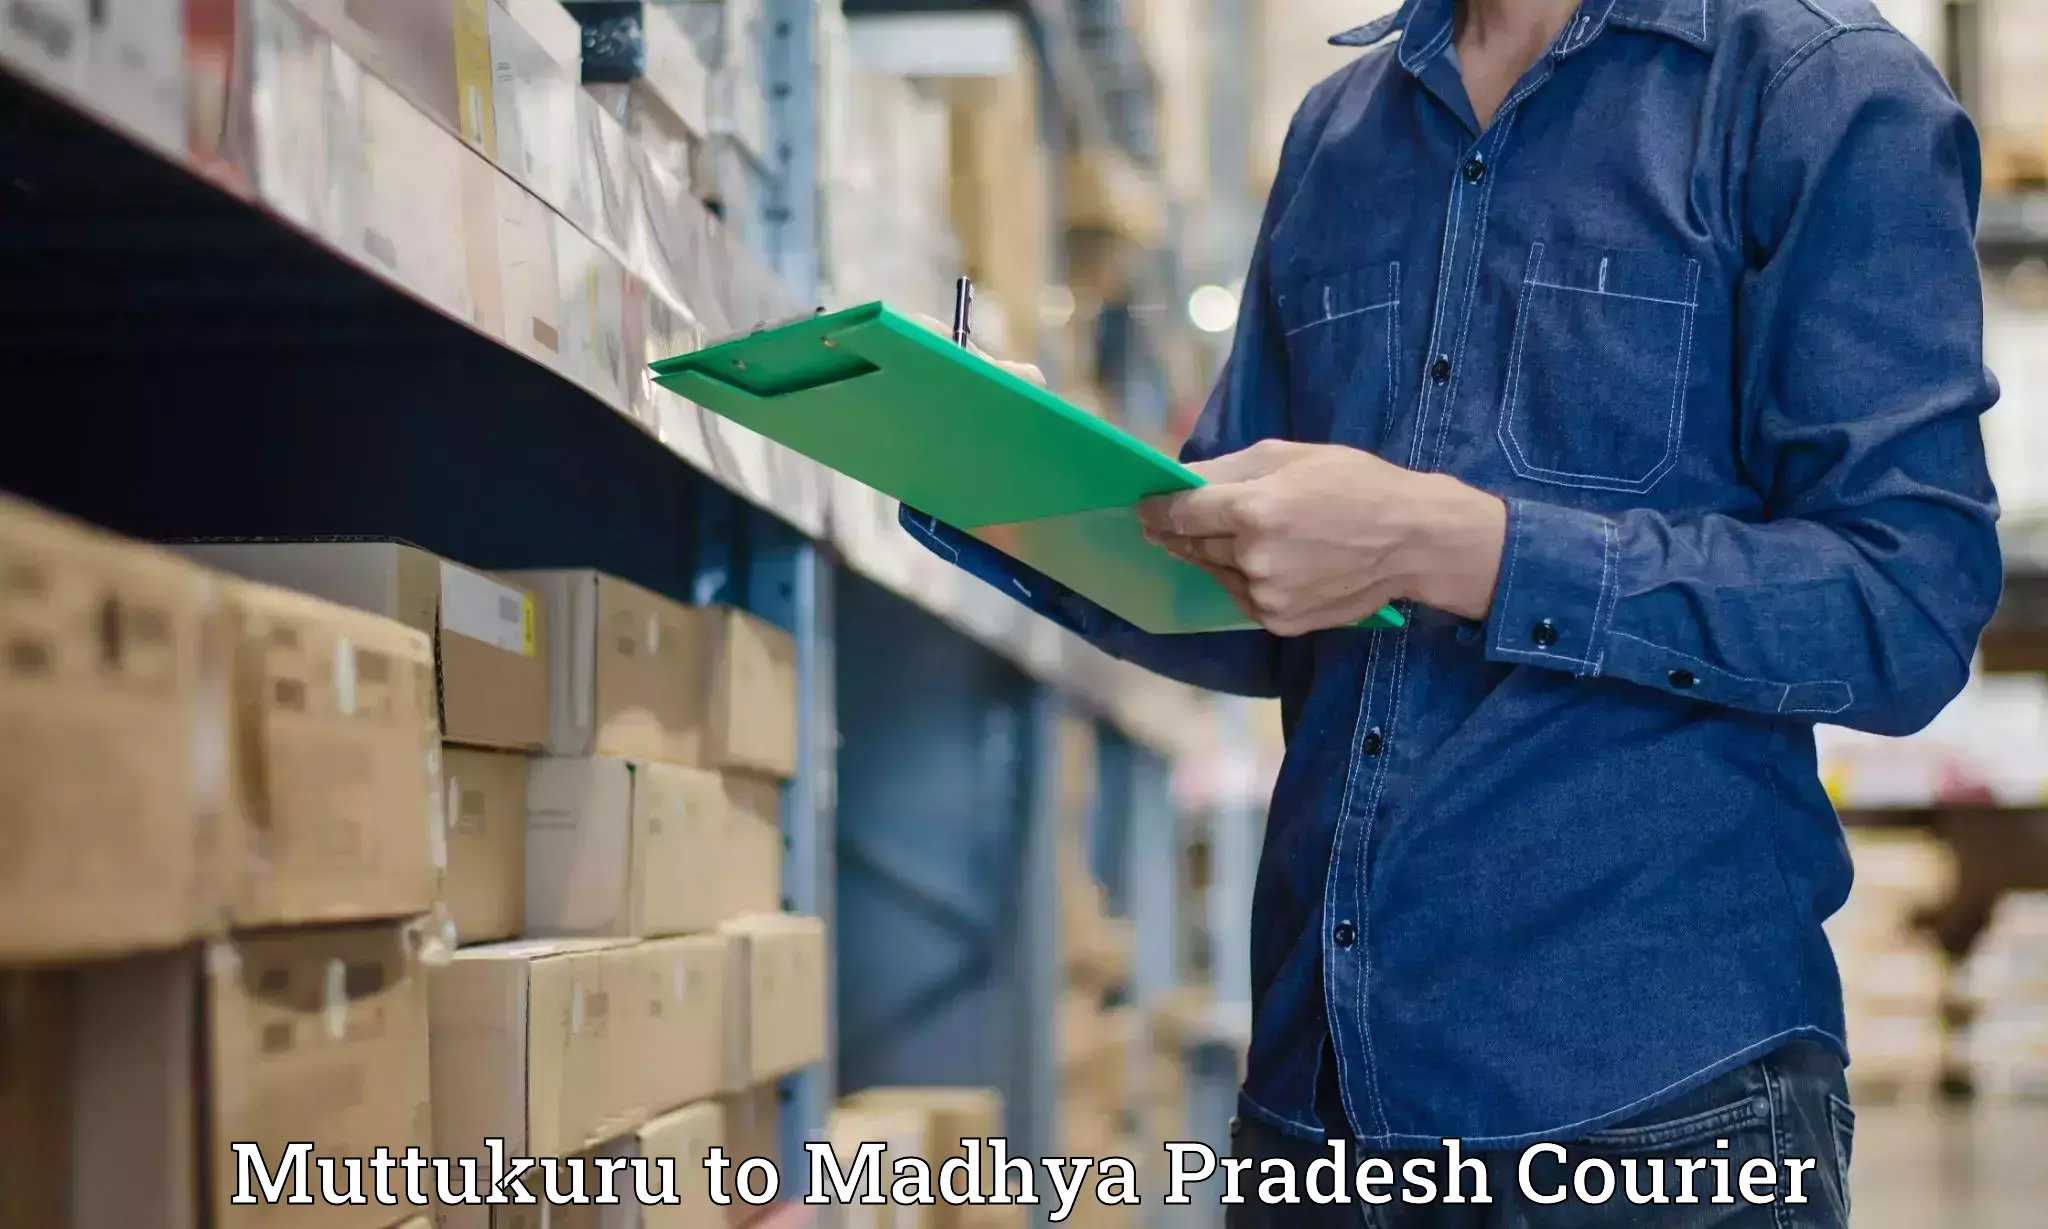 Express delivery solutions Muttukuru to Madhya Pradesh